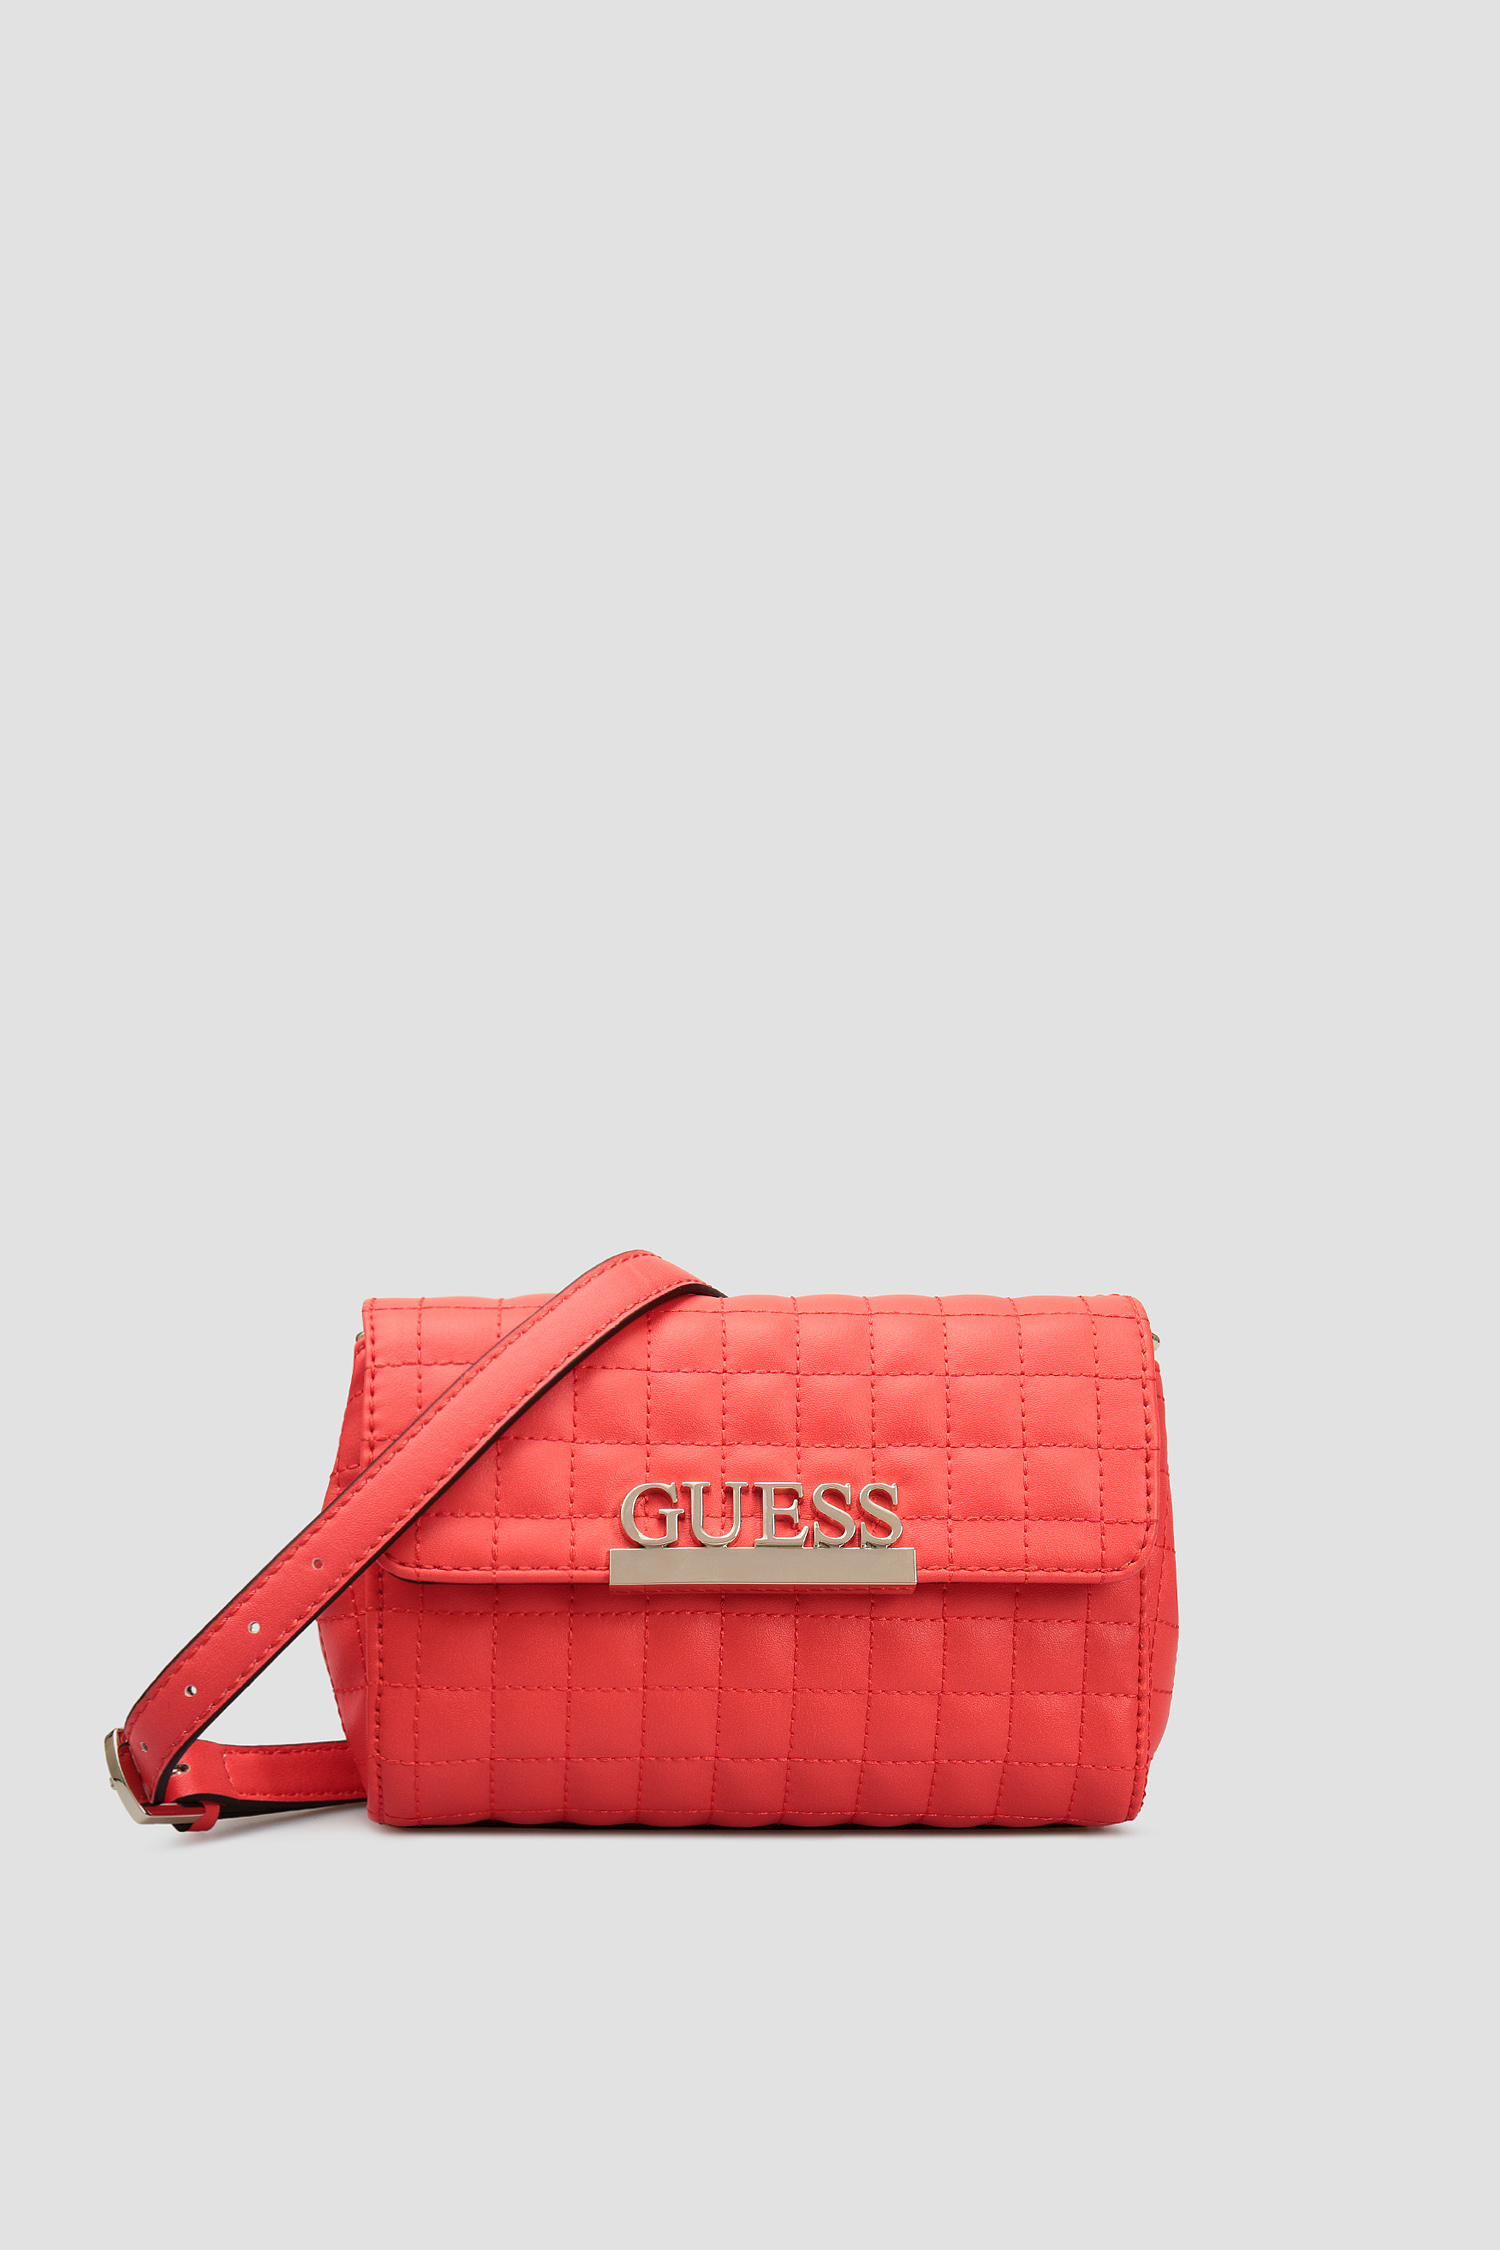 Красная поясная сумка для девушек Guess HWVG77.40810;RED